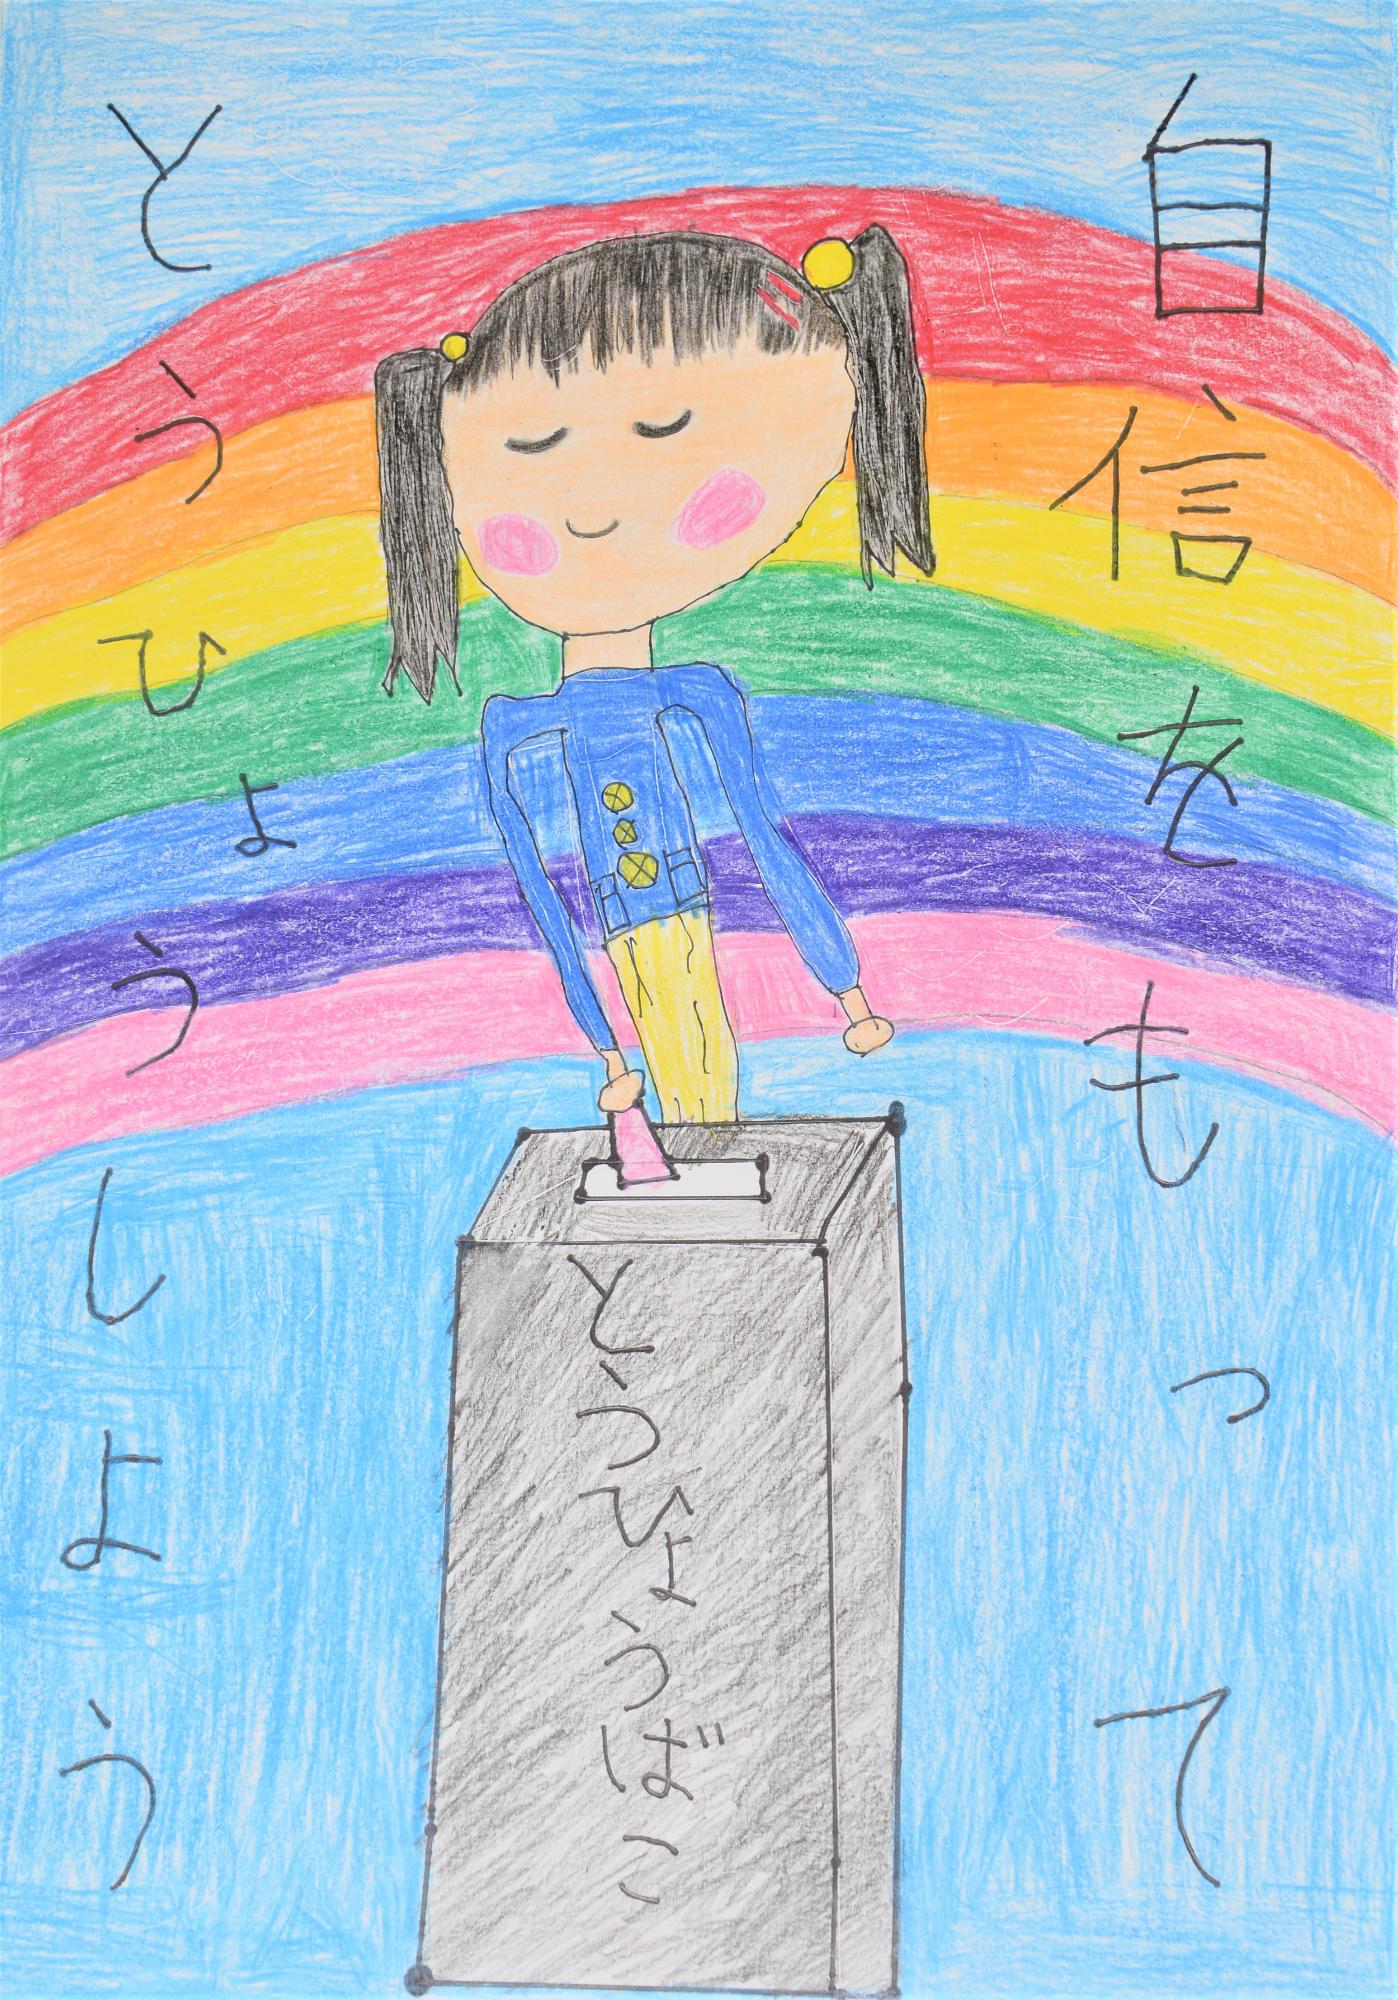 「自信をもってとうひょうしよう」虹を背景に女の子が投票箱に投票するポスター